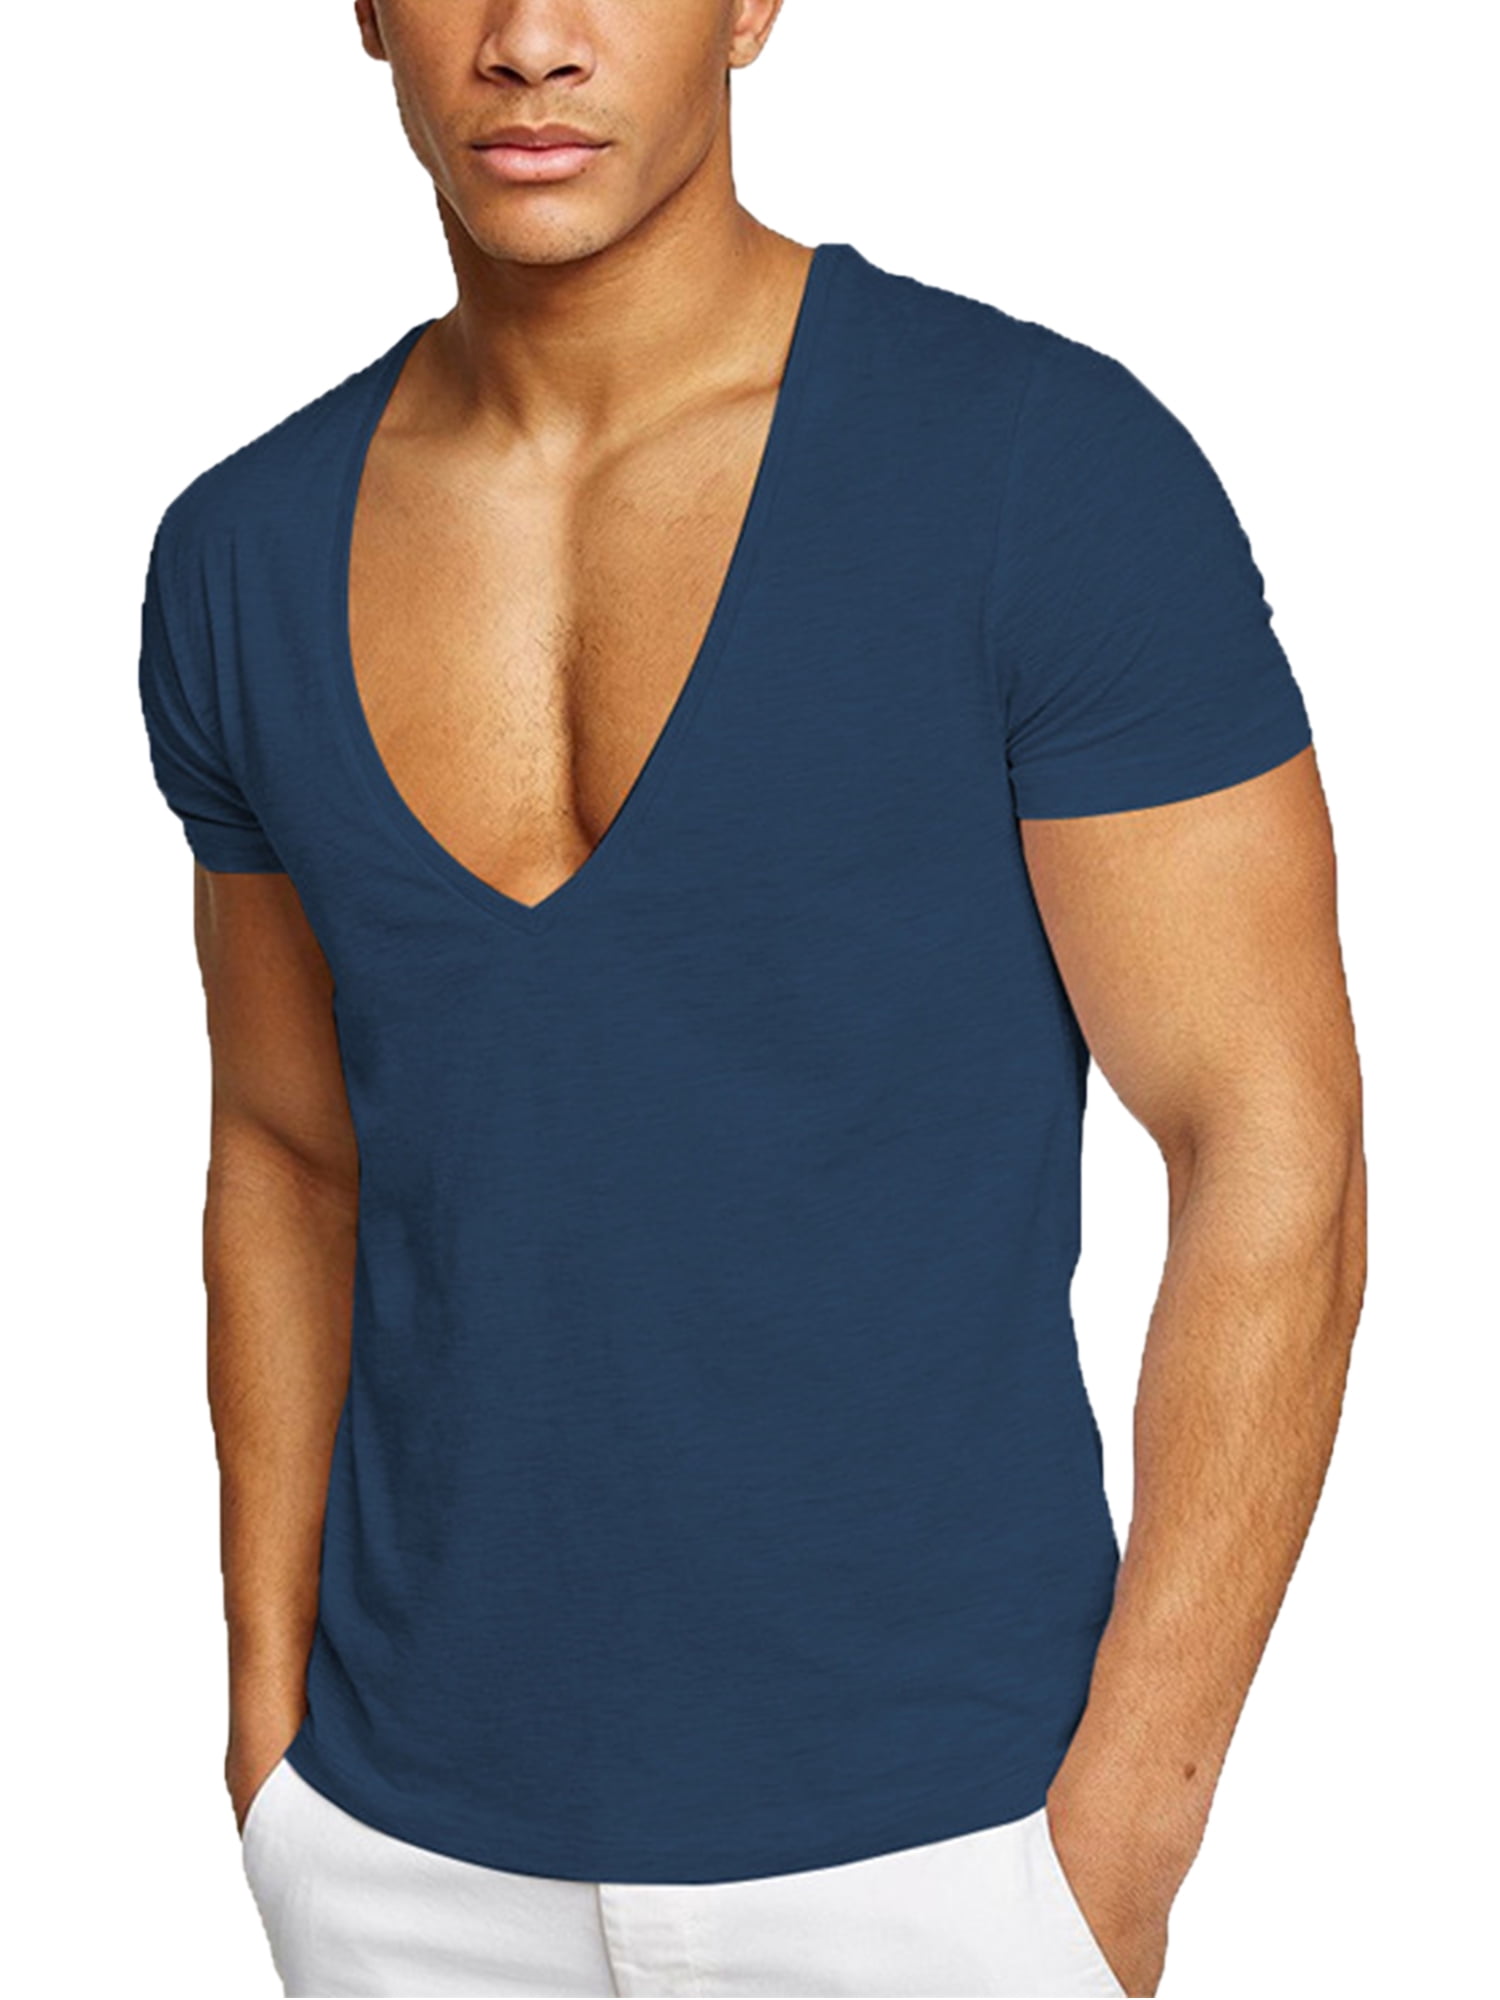 Let analogi Forbindelse Frontwalk V Neck T Shirts for Men Low Cut Deep V Neck Tee Muscle Slim Fit  Stretch Tops for Summer - Walmart.com